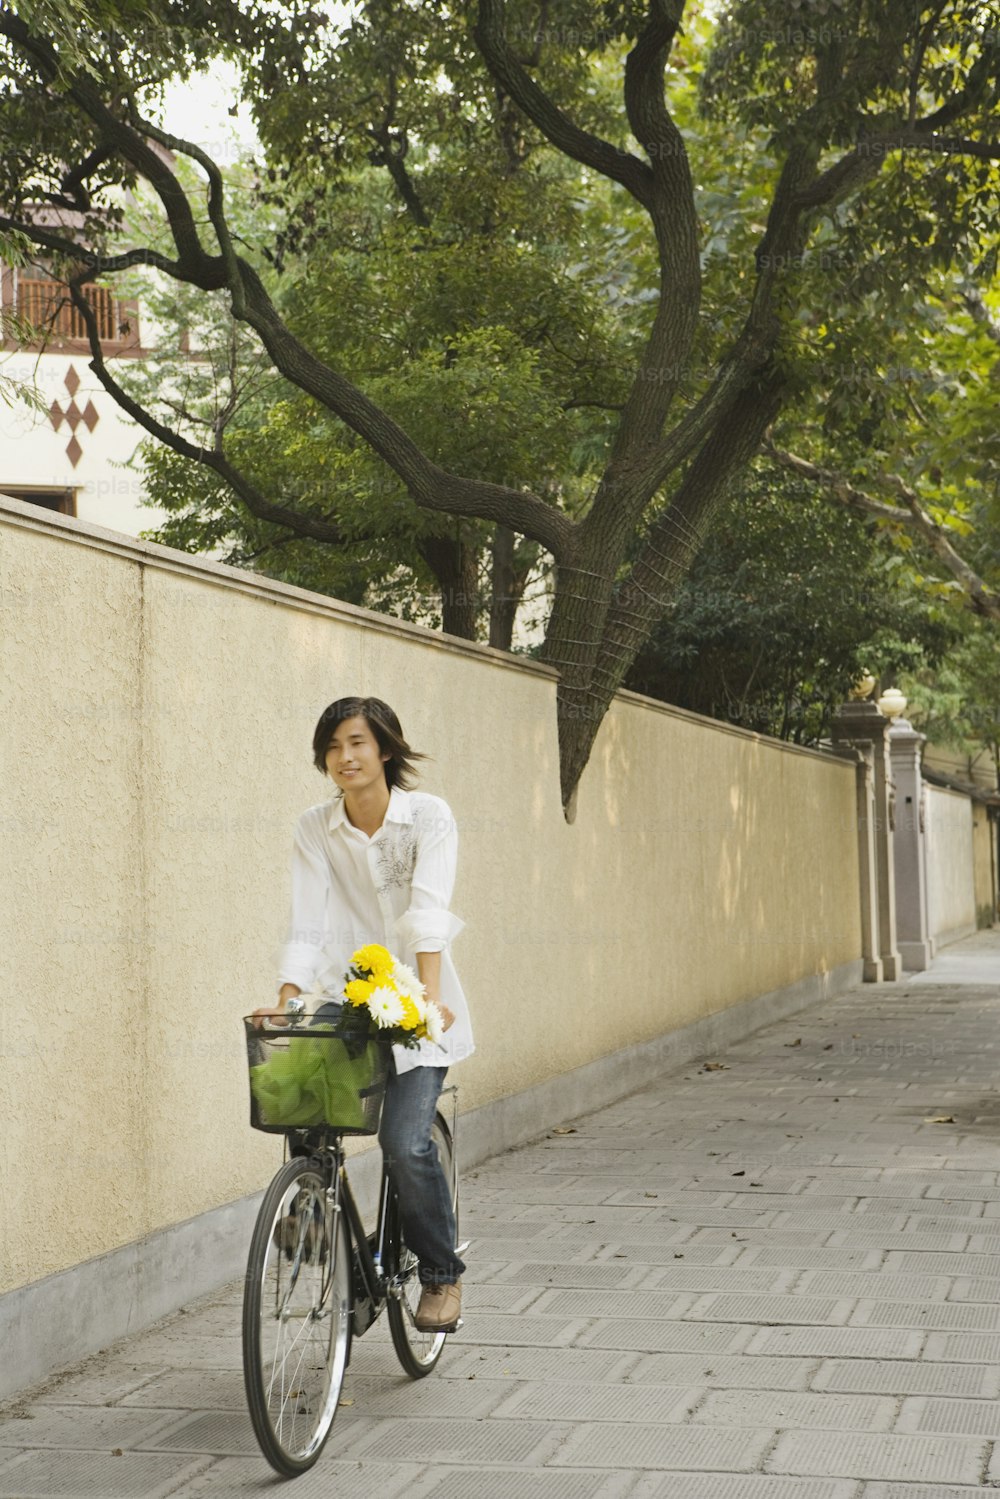 Eine Frau, die mit dem Fahrrad einen Bürgersteig hinunterfährt